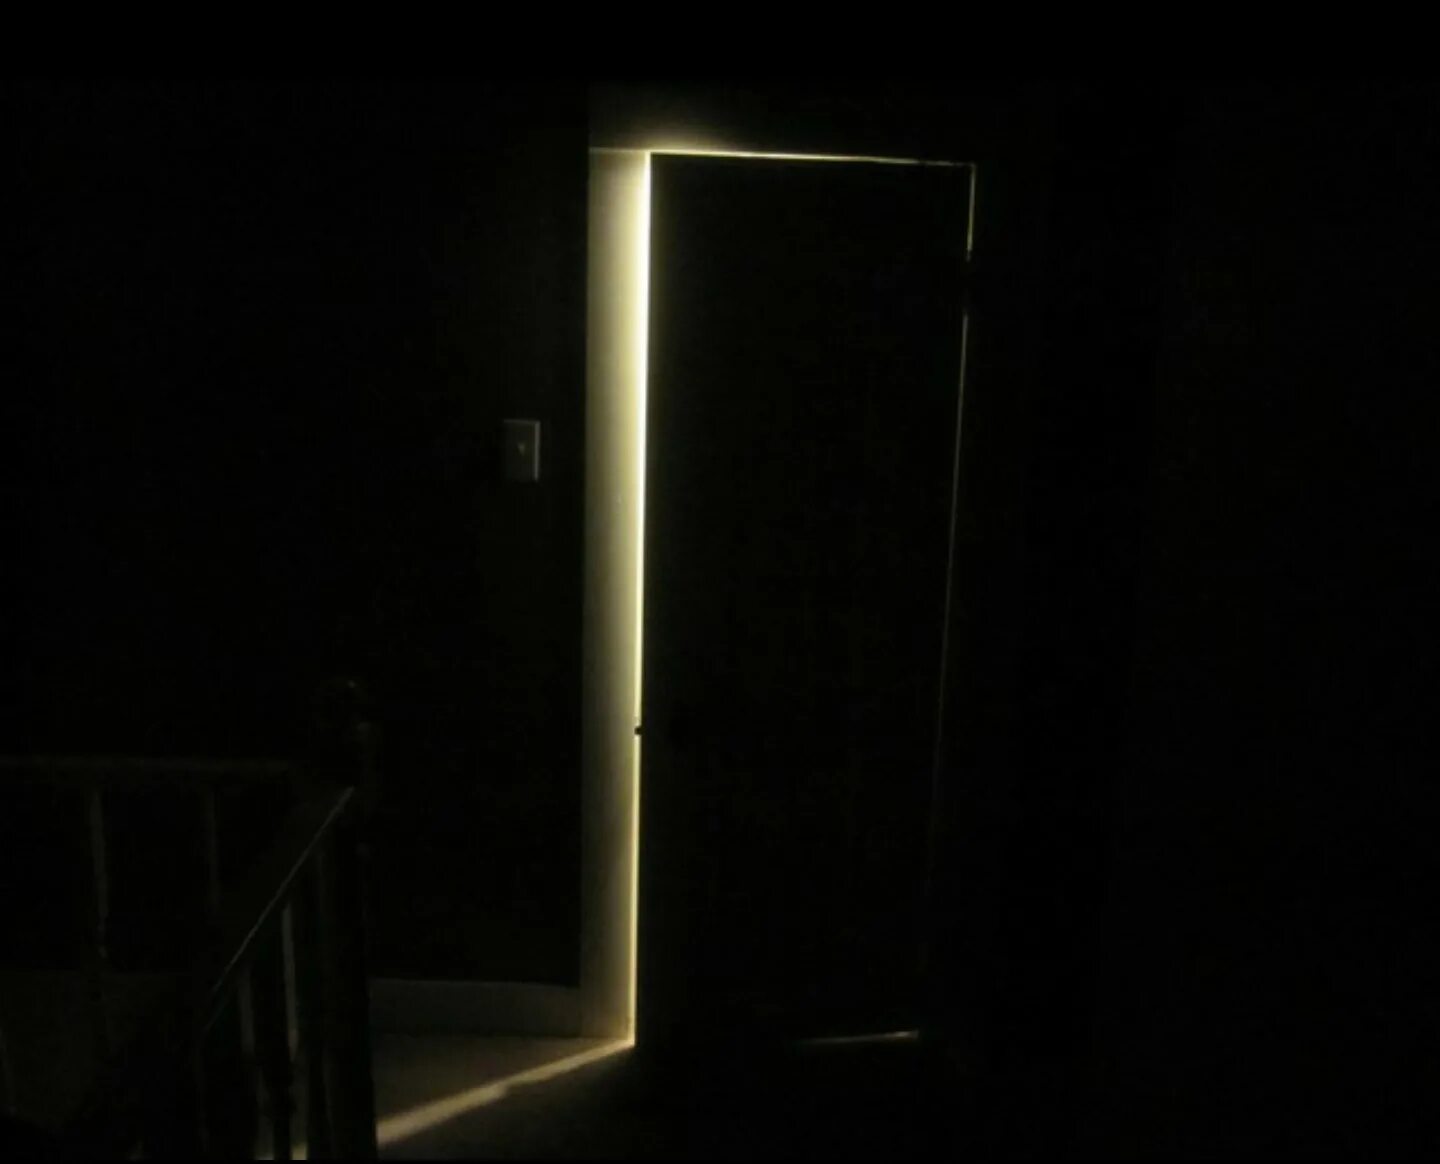 Дверь ночью. Дверь в темную комнату. Приоткрытая дверь в темной комнате. Открытая дверь в темноте